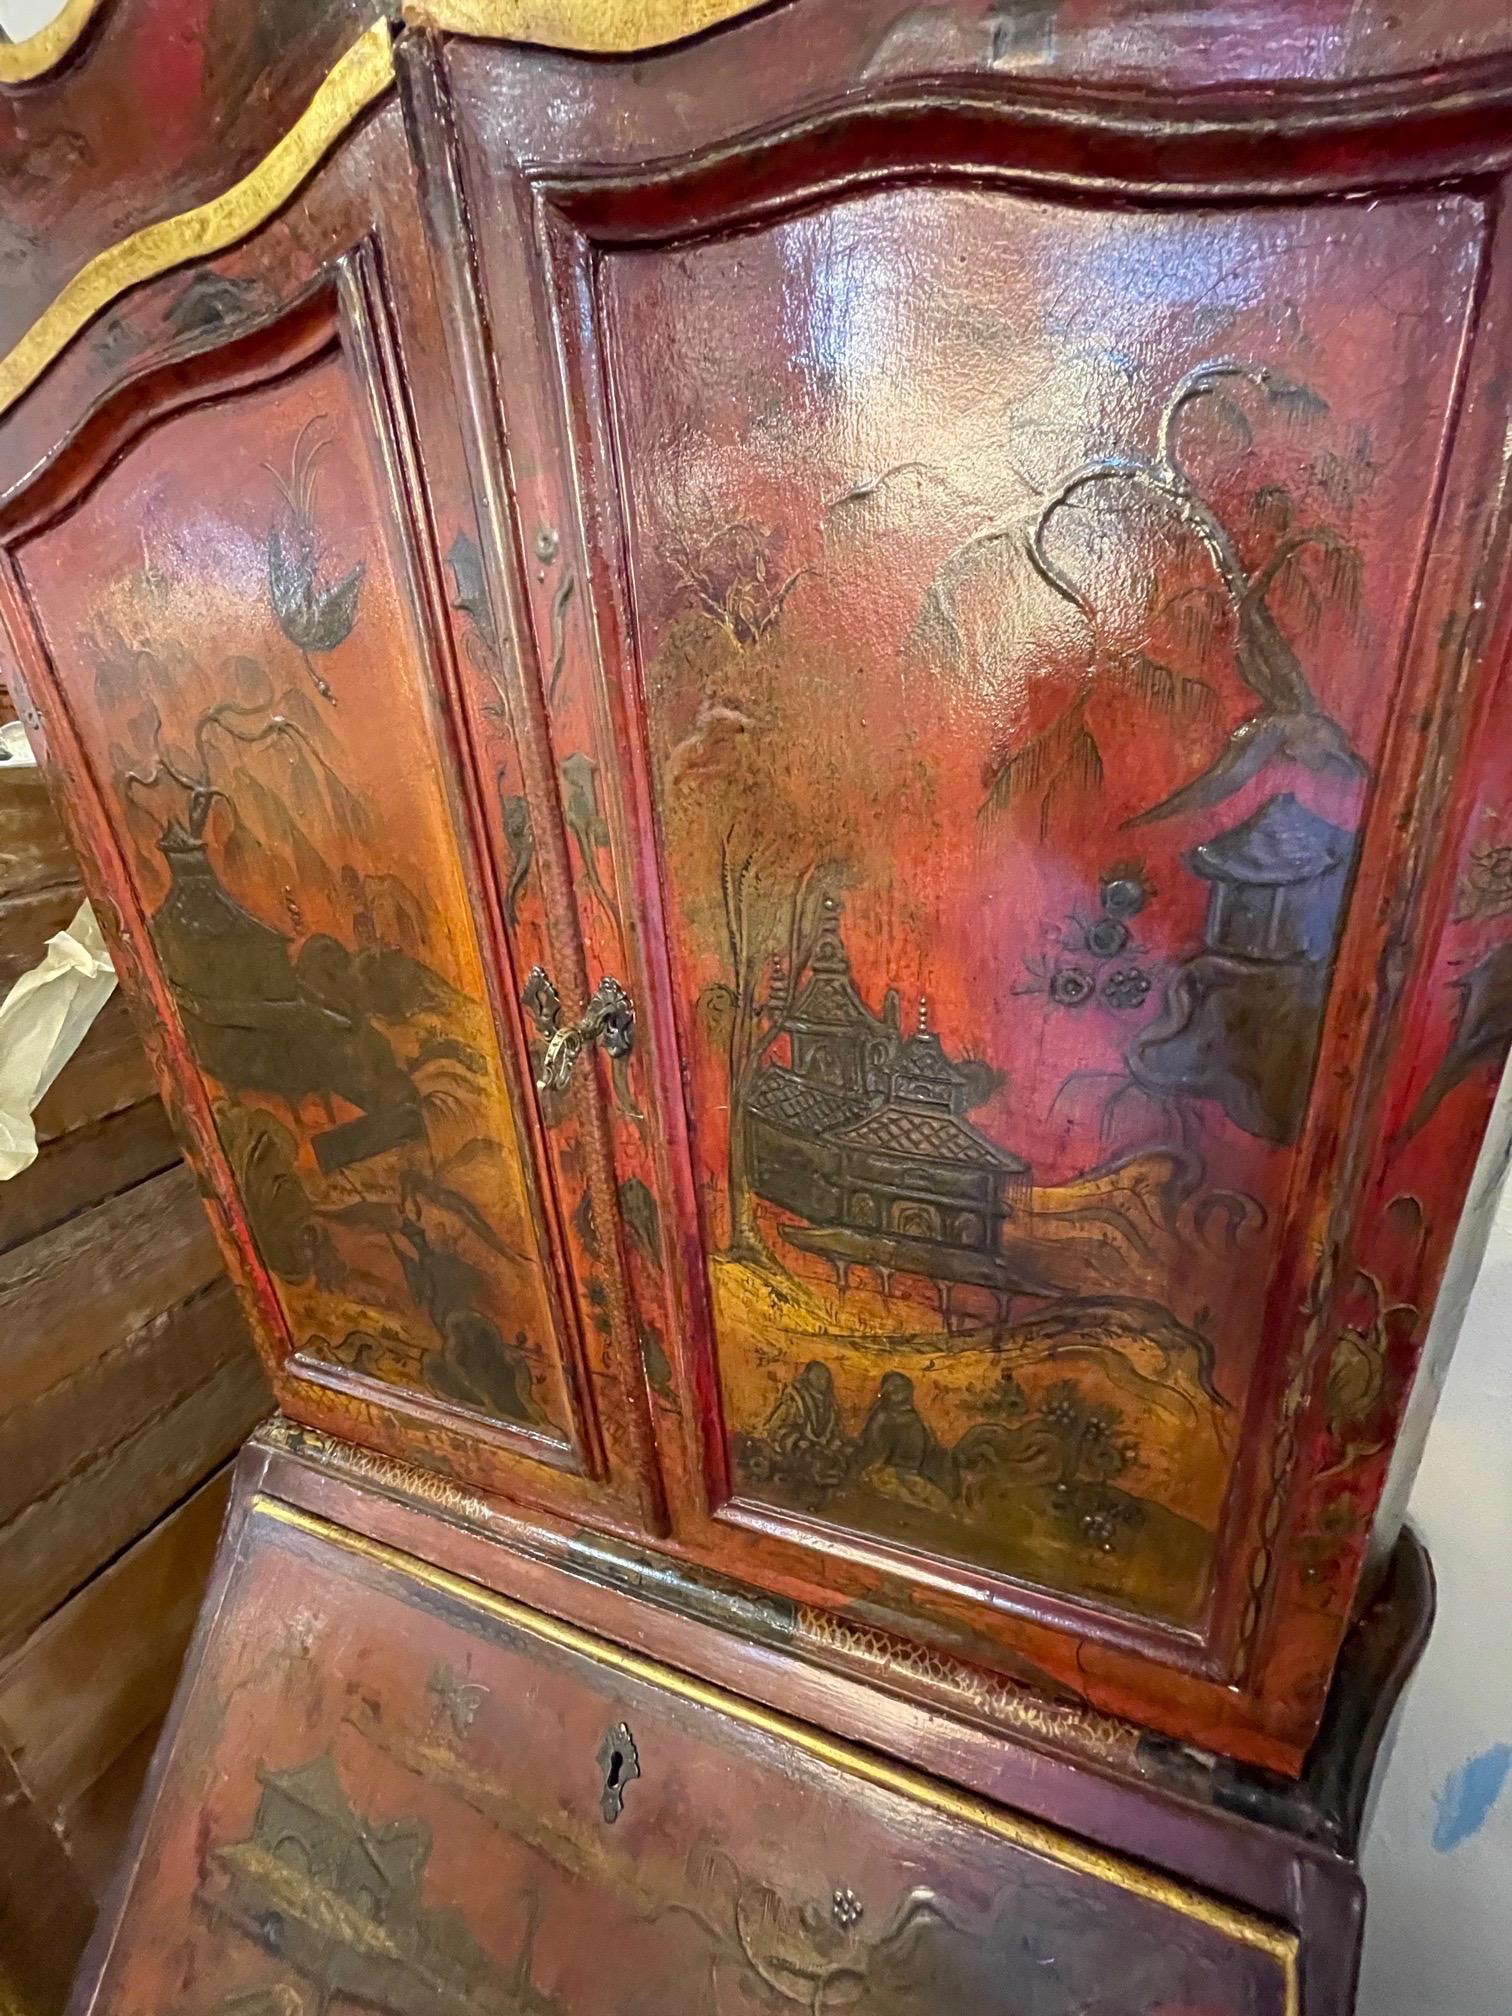 Extraordinaire et rare secrétaire laqué rouge italien du 19ème siècle avec des motifs de chinoiserie en relief. De belles images asiatiques sur l'extérieur du meuble et aussi à l'intérieur. S'ouvre pour révéler des compartiments de rangement et une